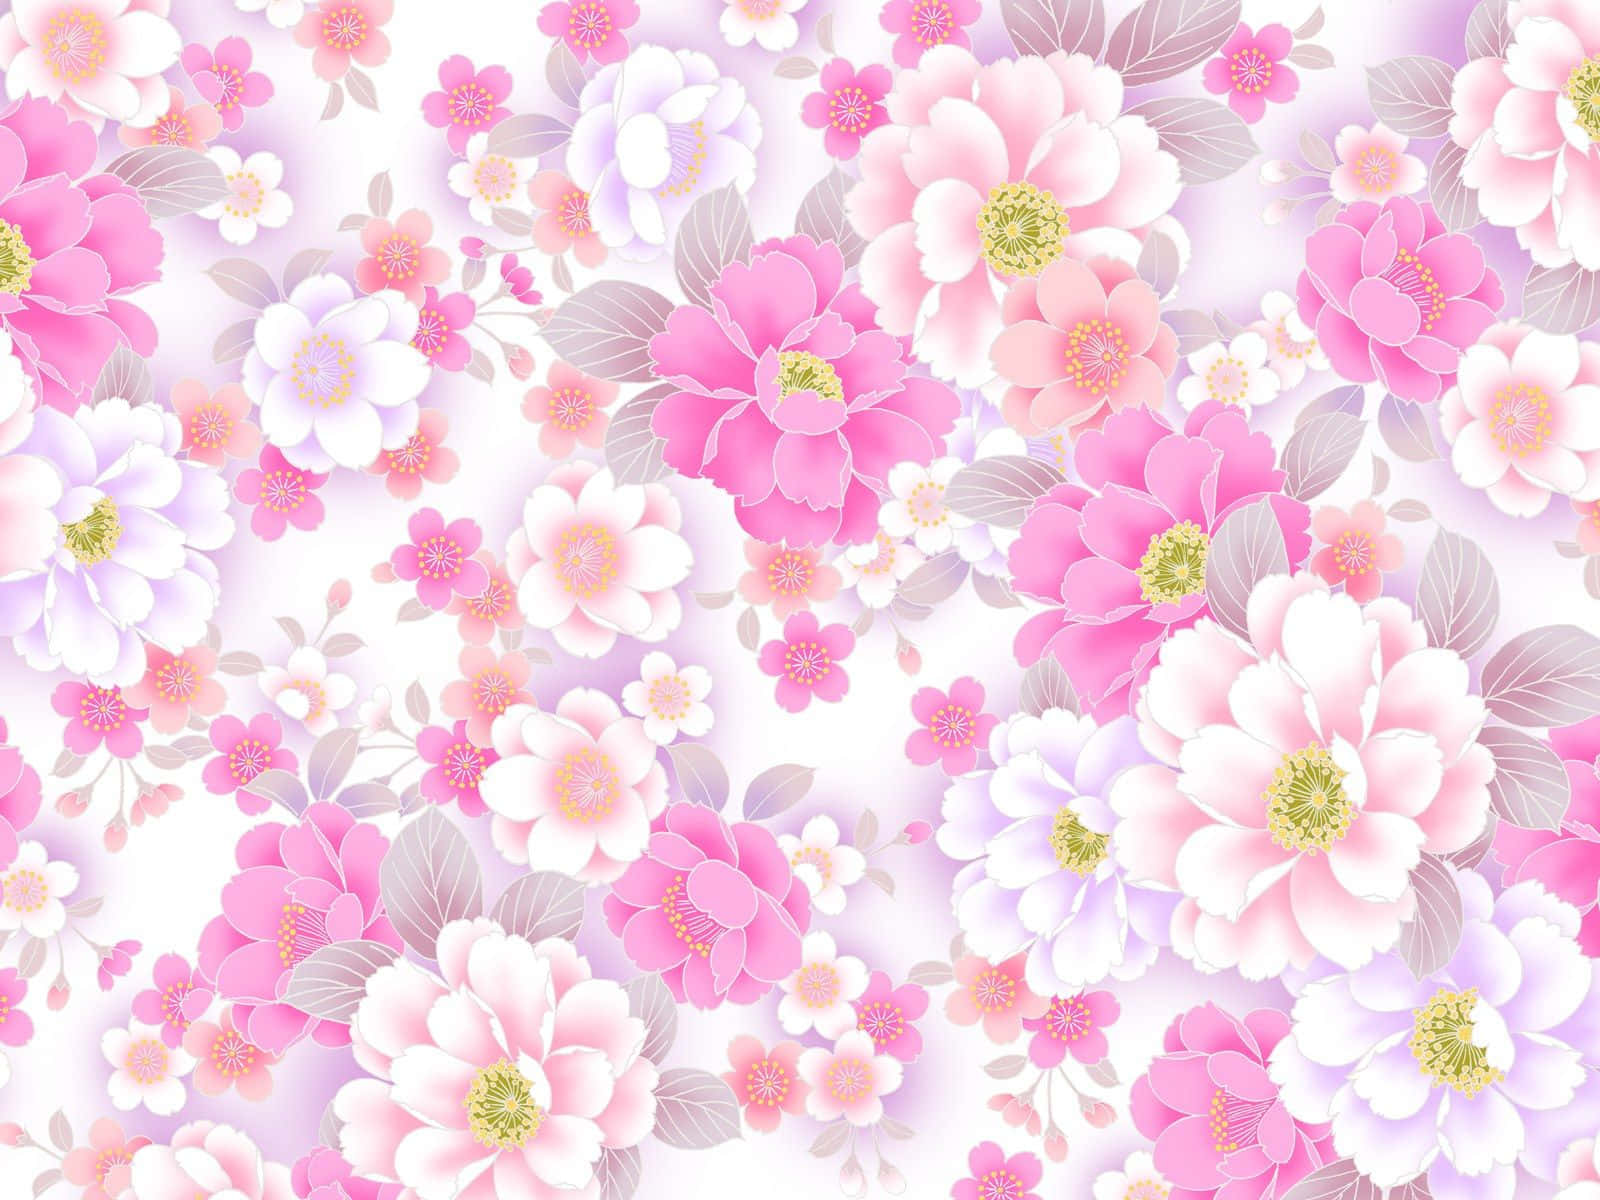 Floralrosa Disfruta La Belleza De La Naturaleza Con Este Impresionante Fondo De Pantalla Floral Rosa. Fondo de pantalla